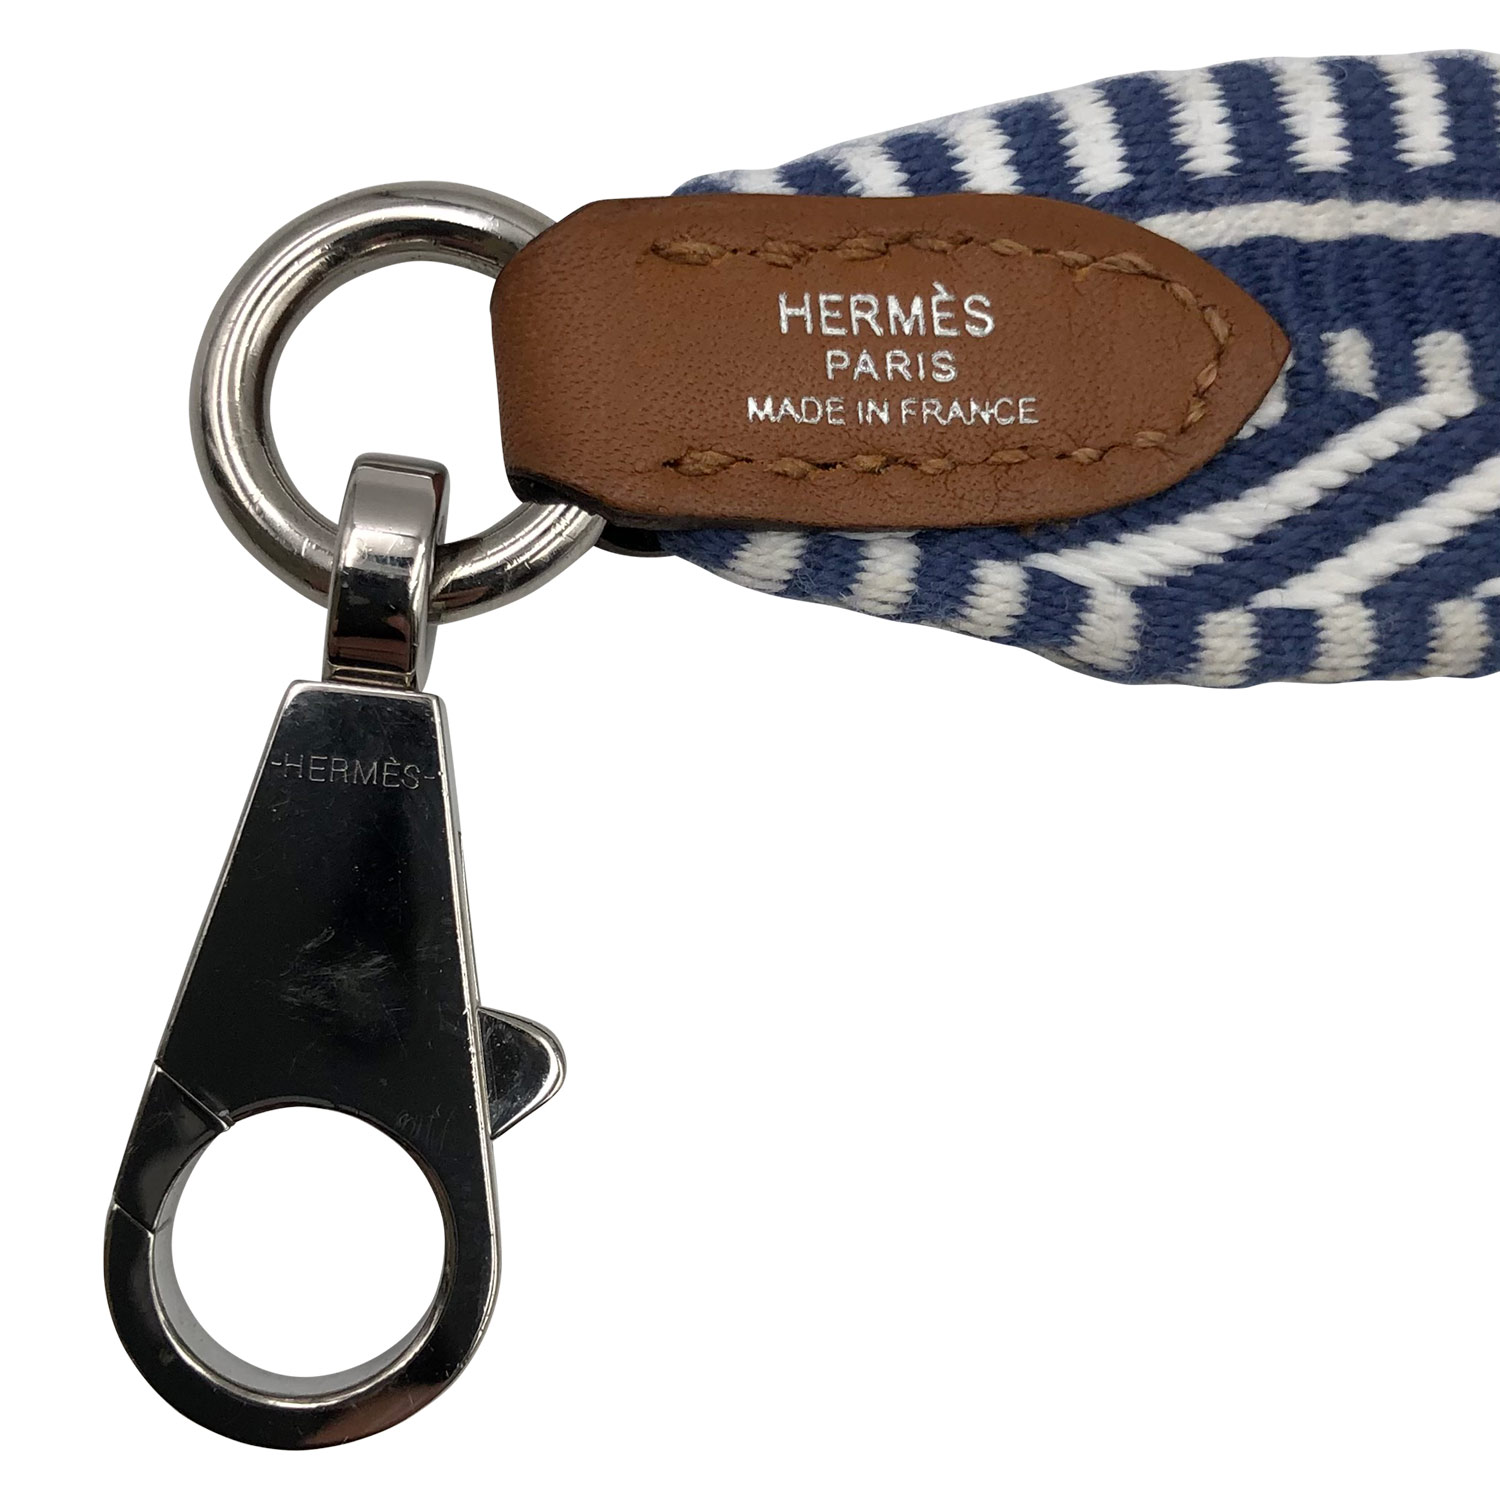 Hermes canvas strap - classic plain or sangle cavale?